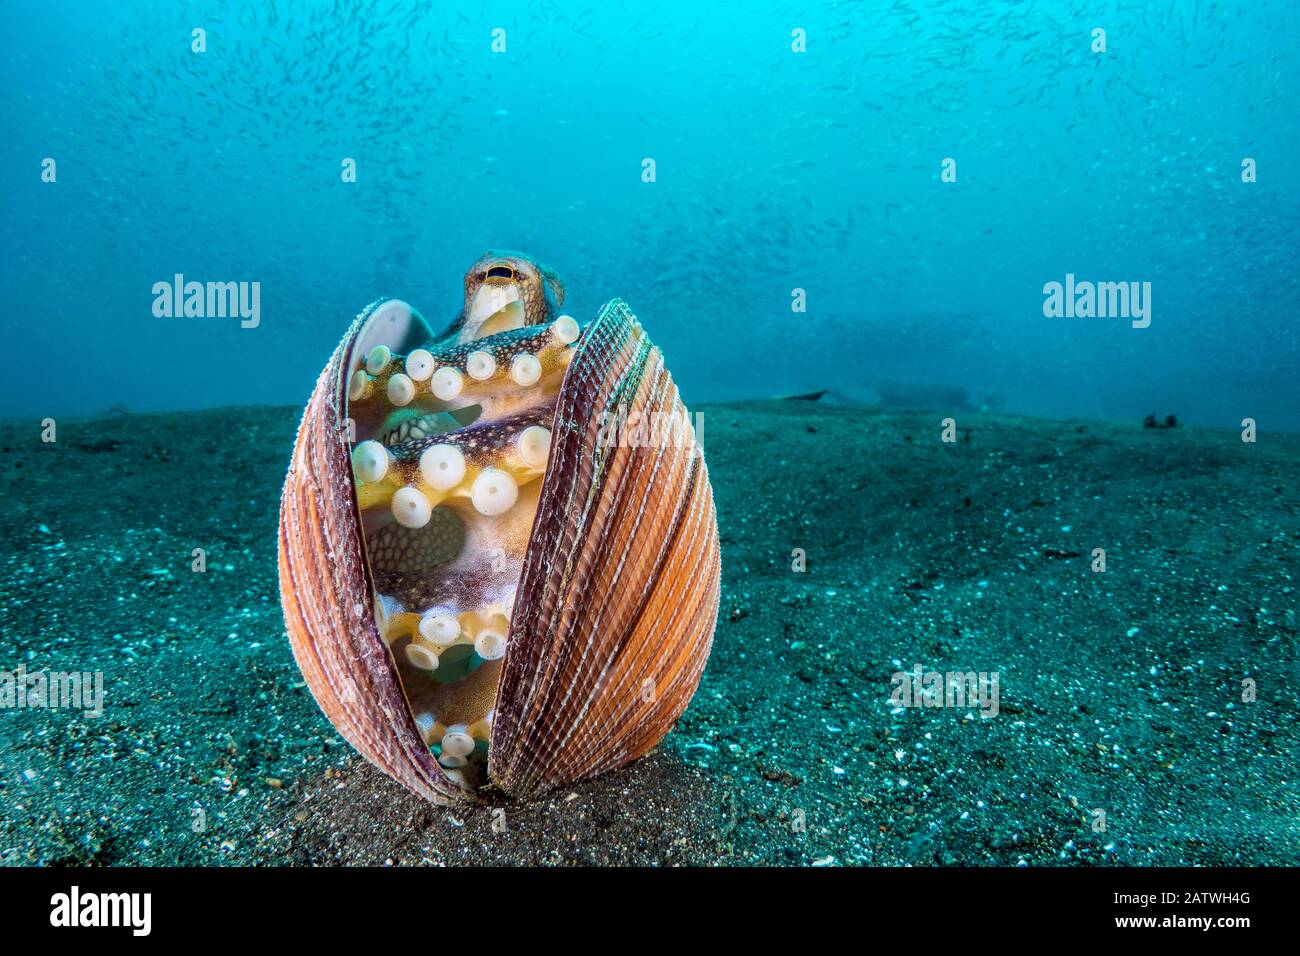 Veined Octopus (Amphioctopus marginatus) schützt innerhalb einer alten Muschel mit silbernen Seiten im Wasser darüber. Bitung, Nord-Sulawesi, Indonesien. Lembeh Strait, Molucca Sea. Stockfoto